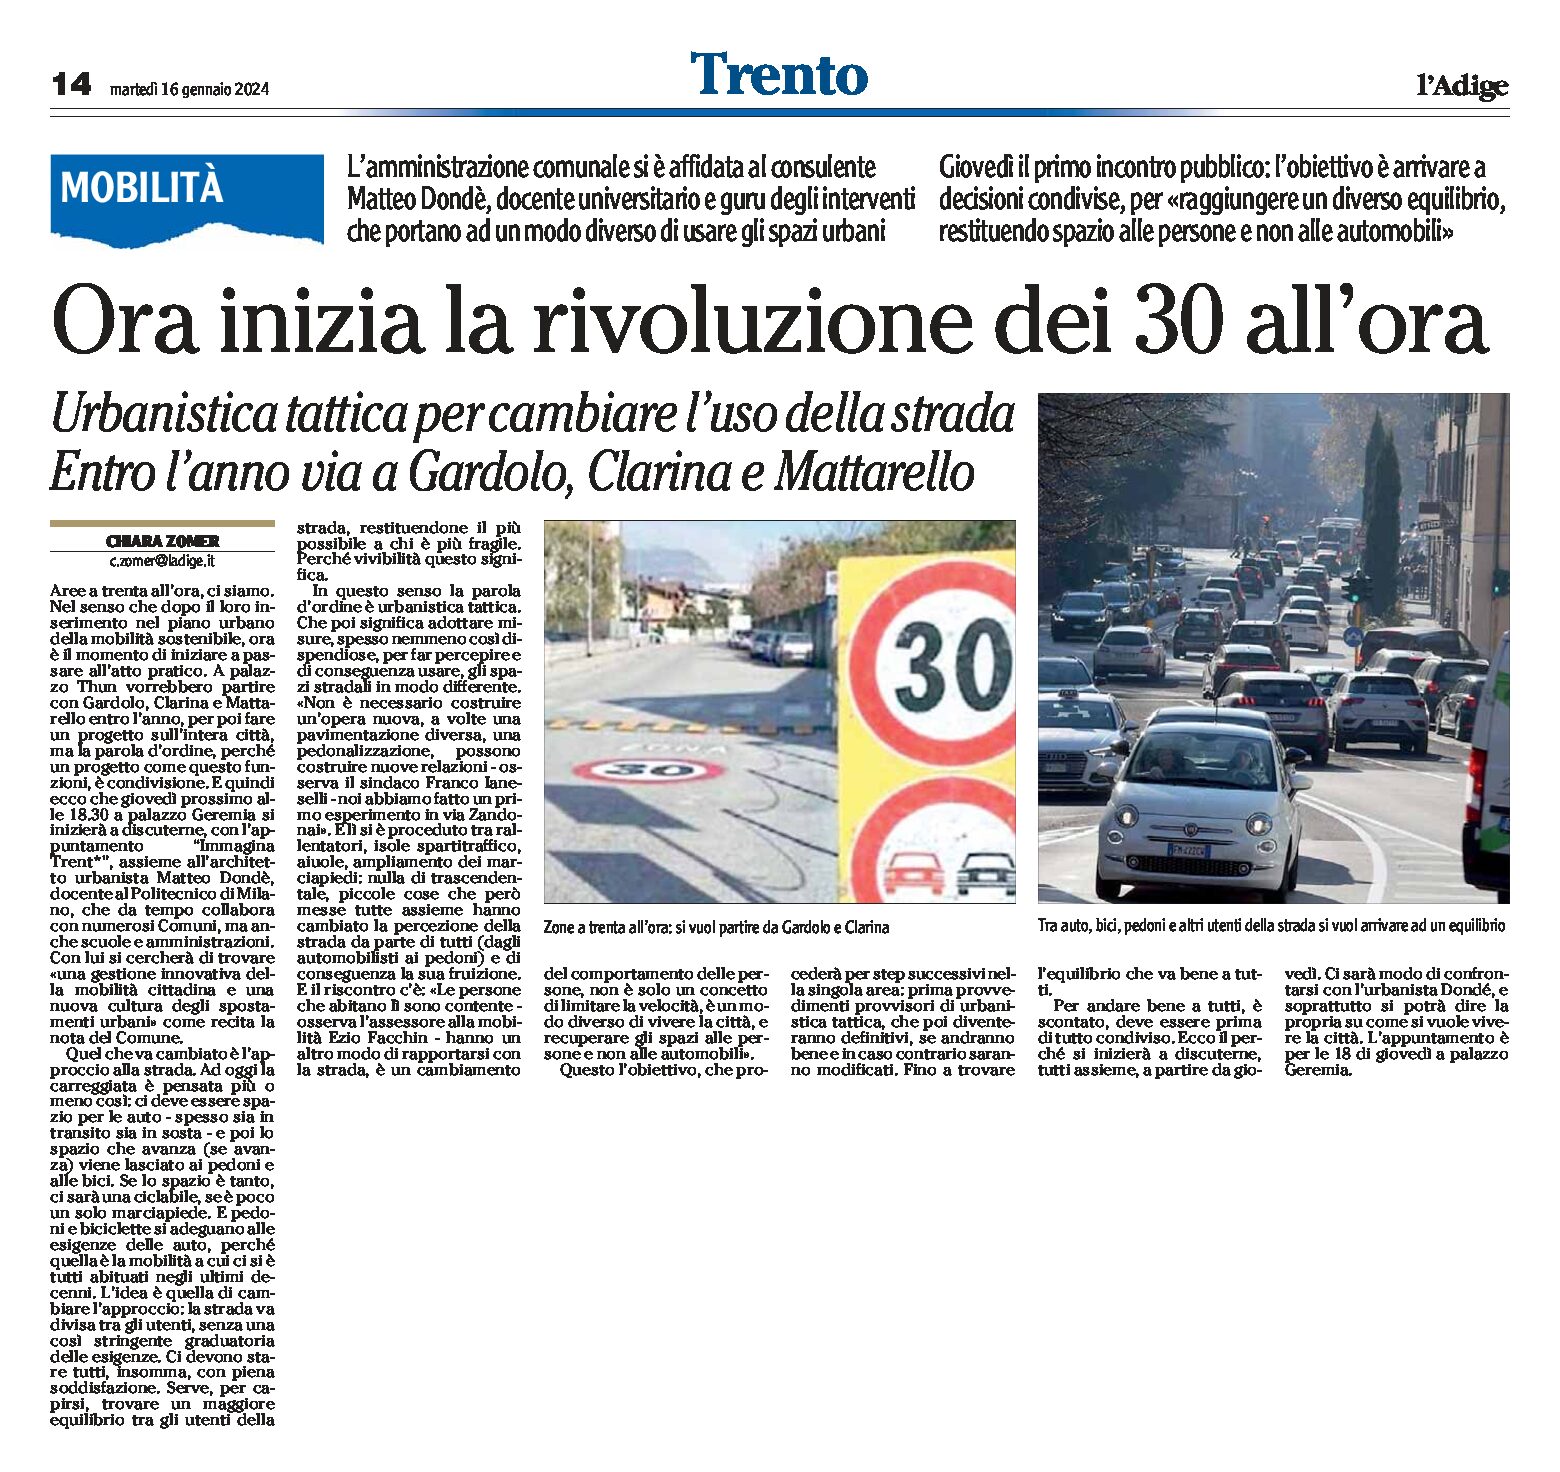 Trento: urbanistica tattica per cambiare l’uso della strada